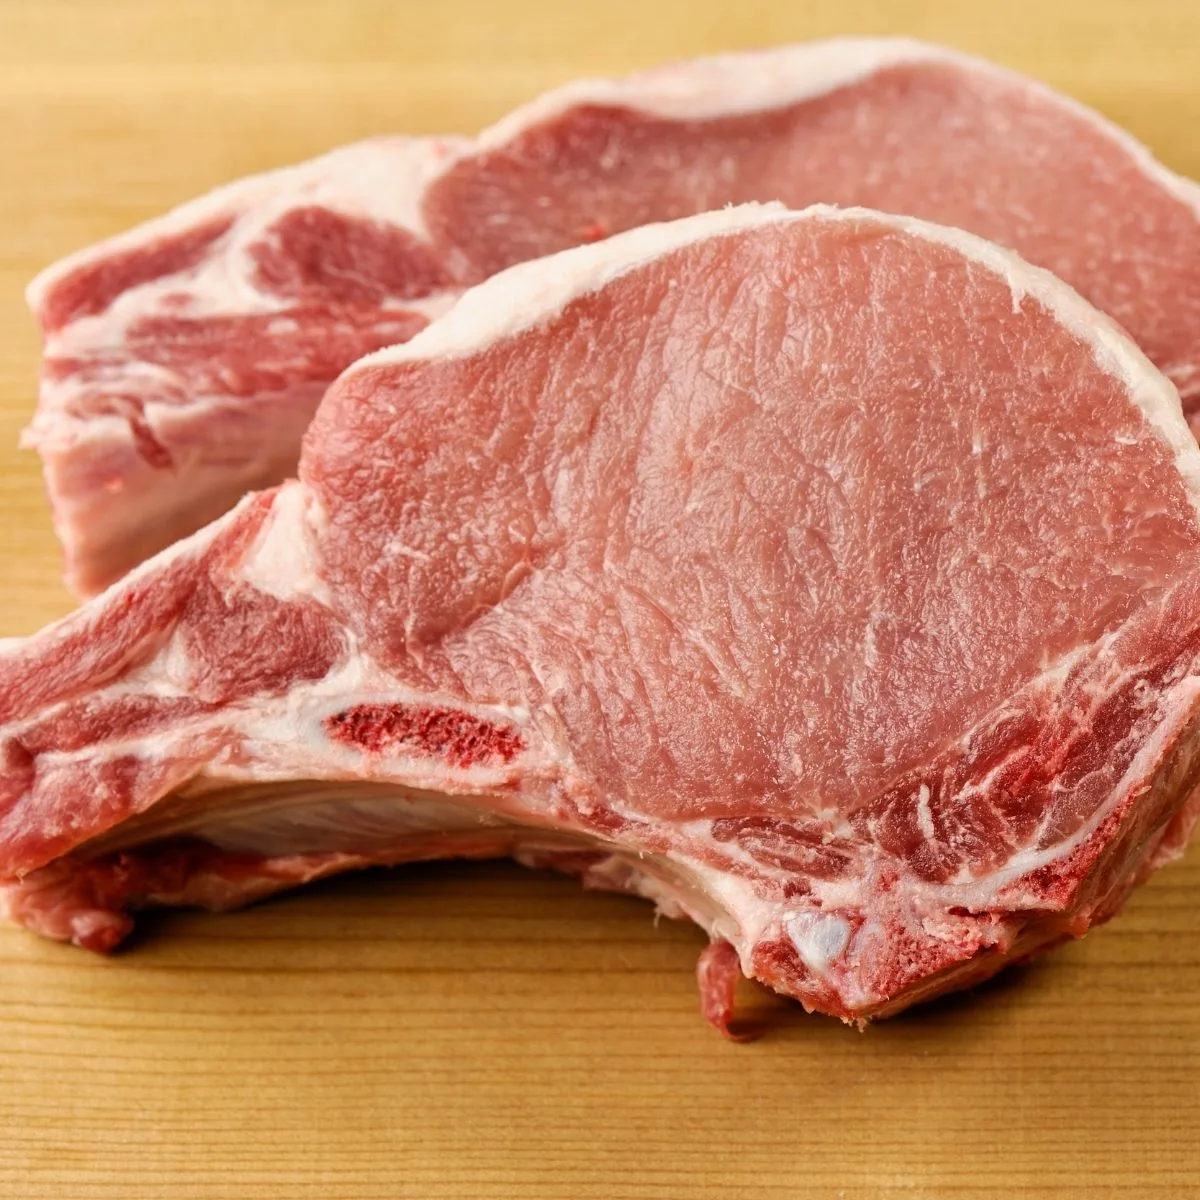 two raw pork chops